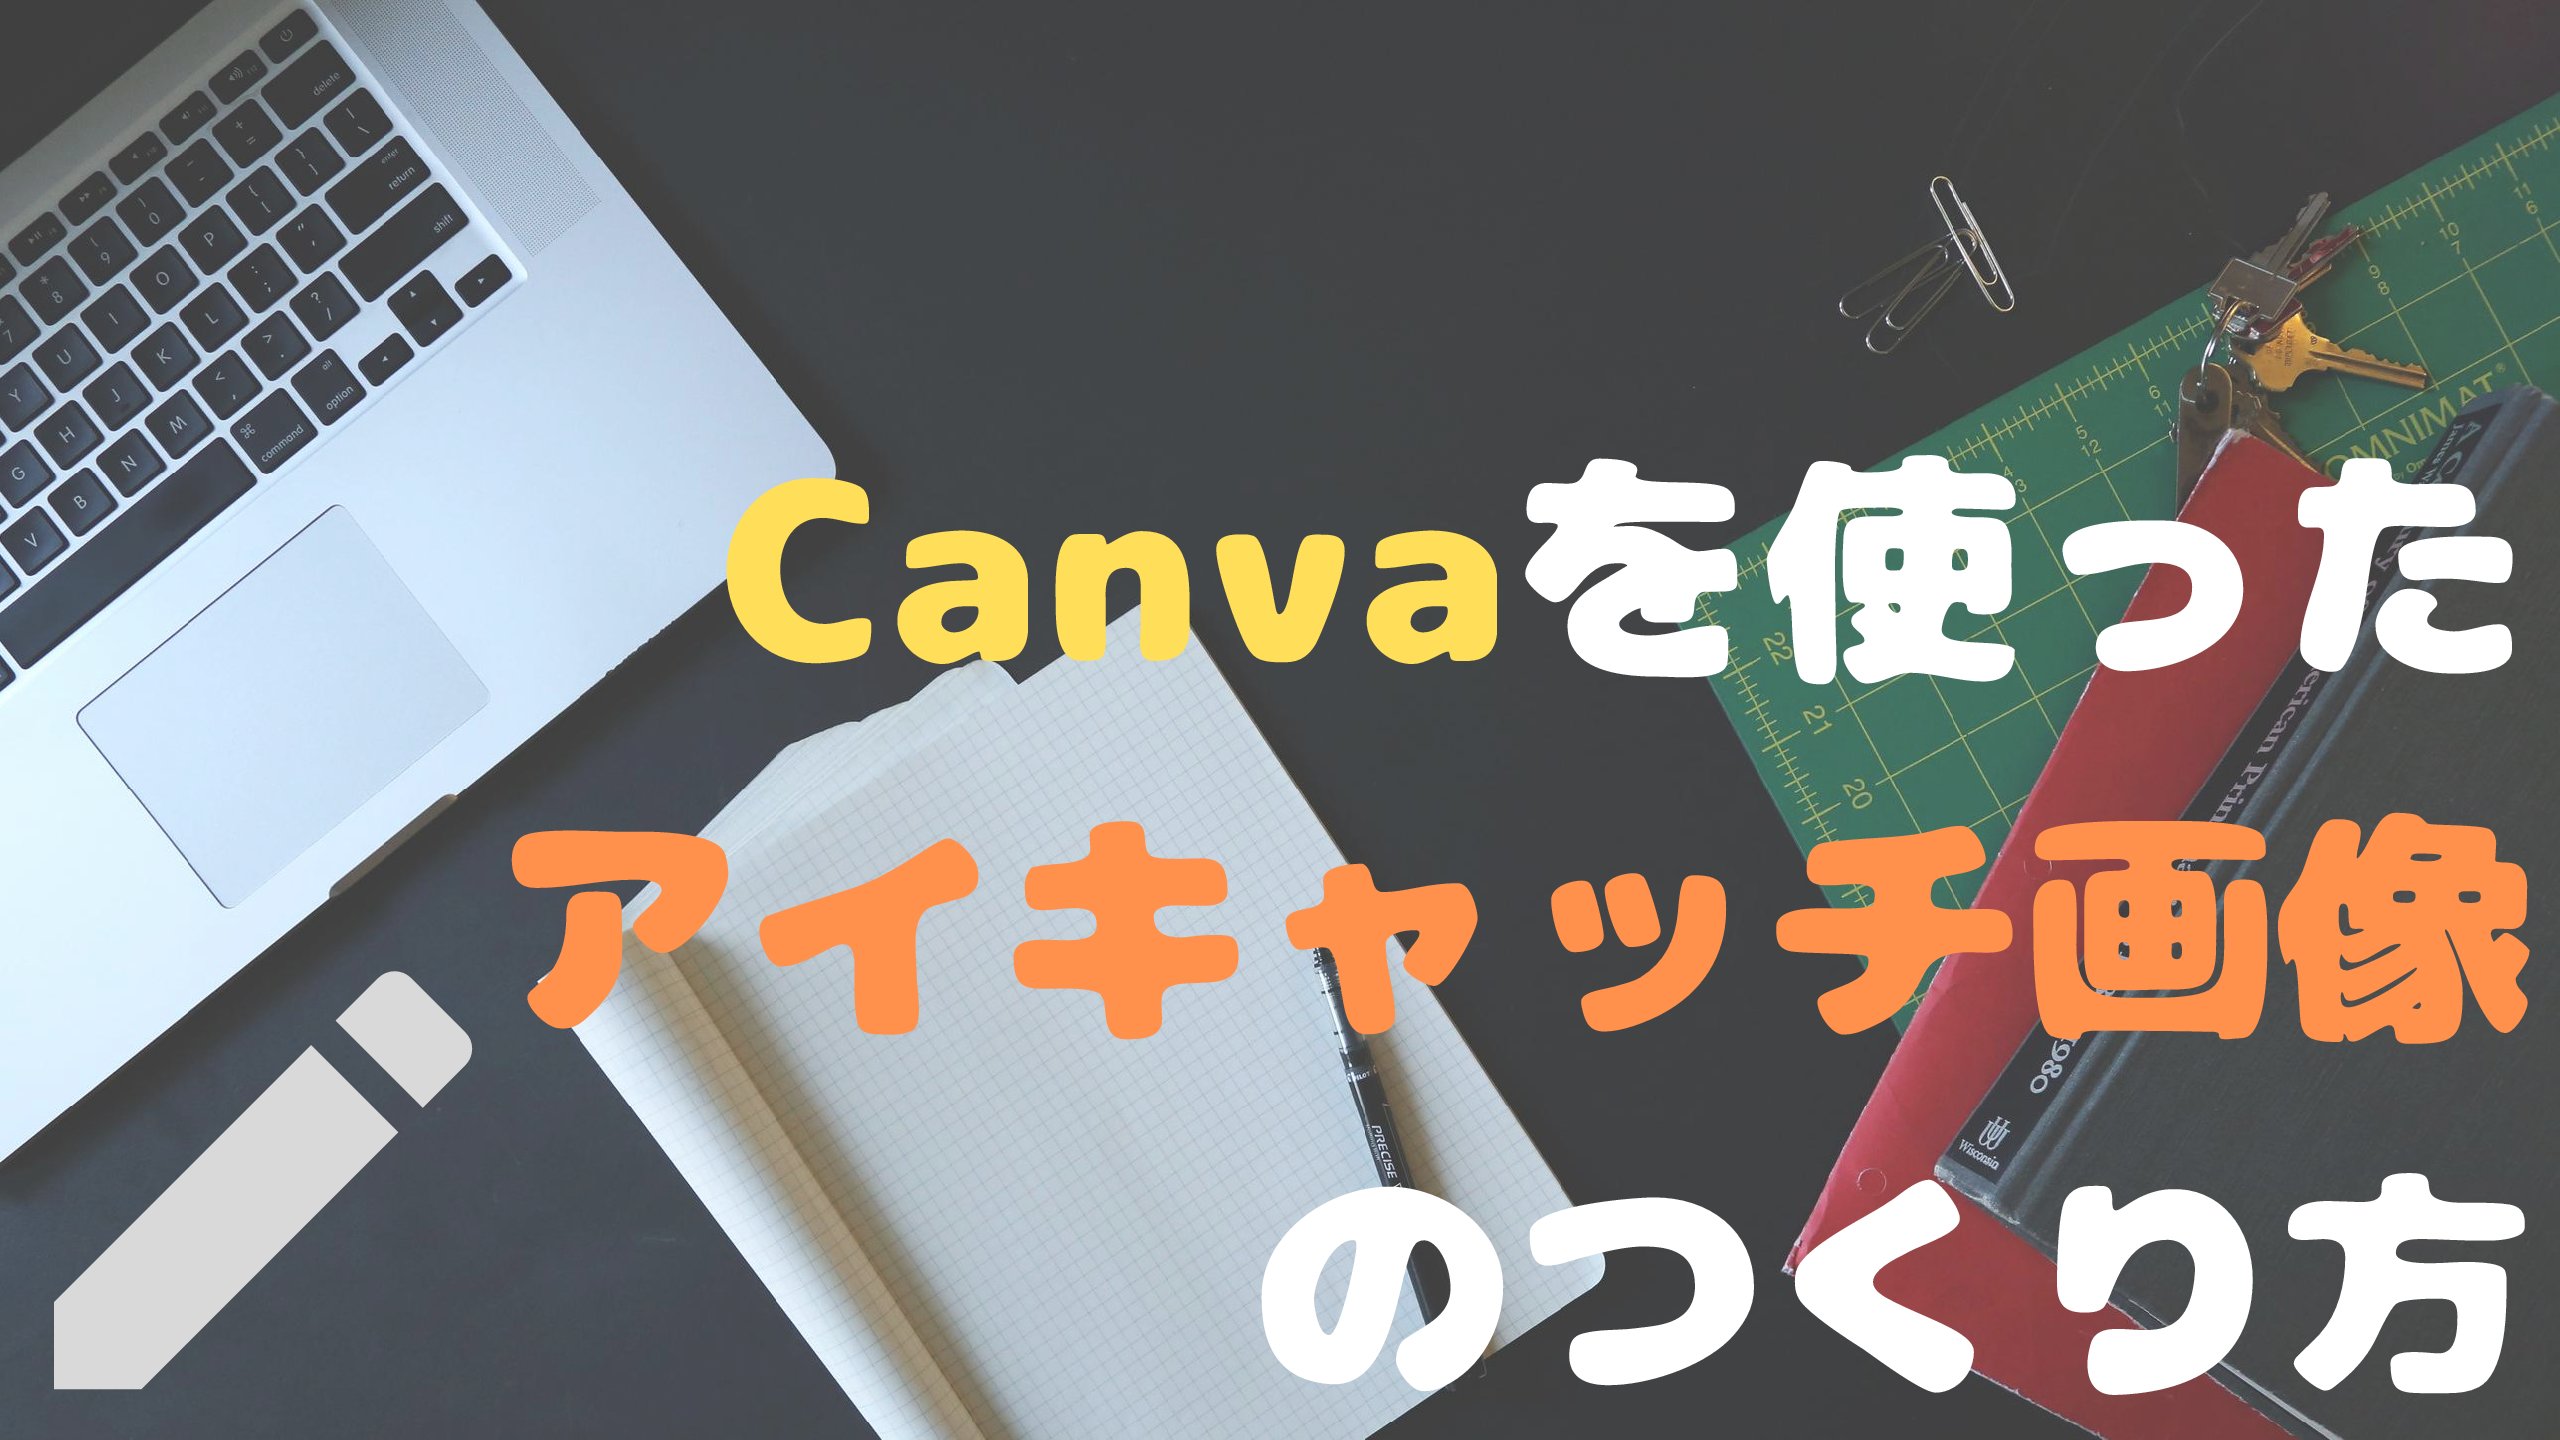 ブログのおしゃれなアイキャッチ画像の作り方 Canva ハピマネ教室